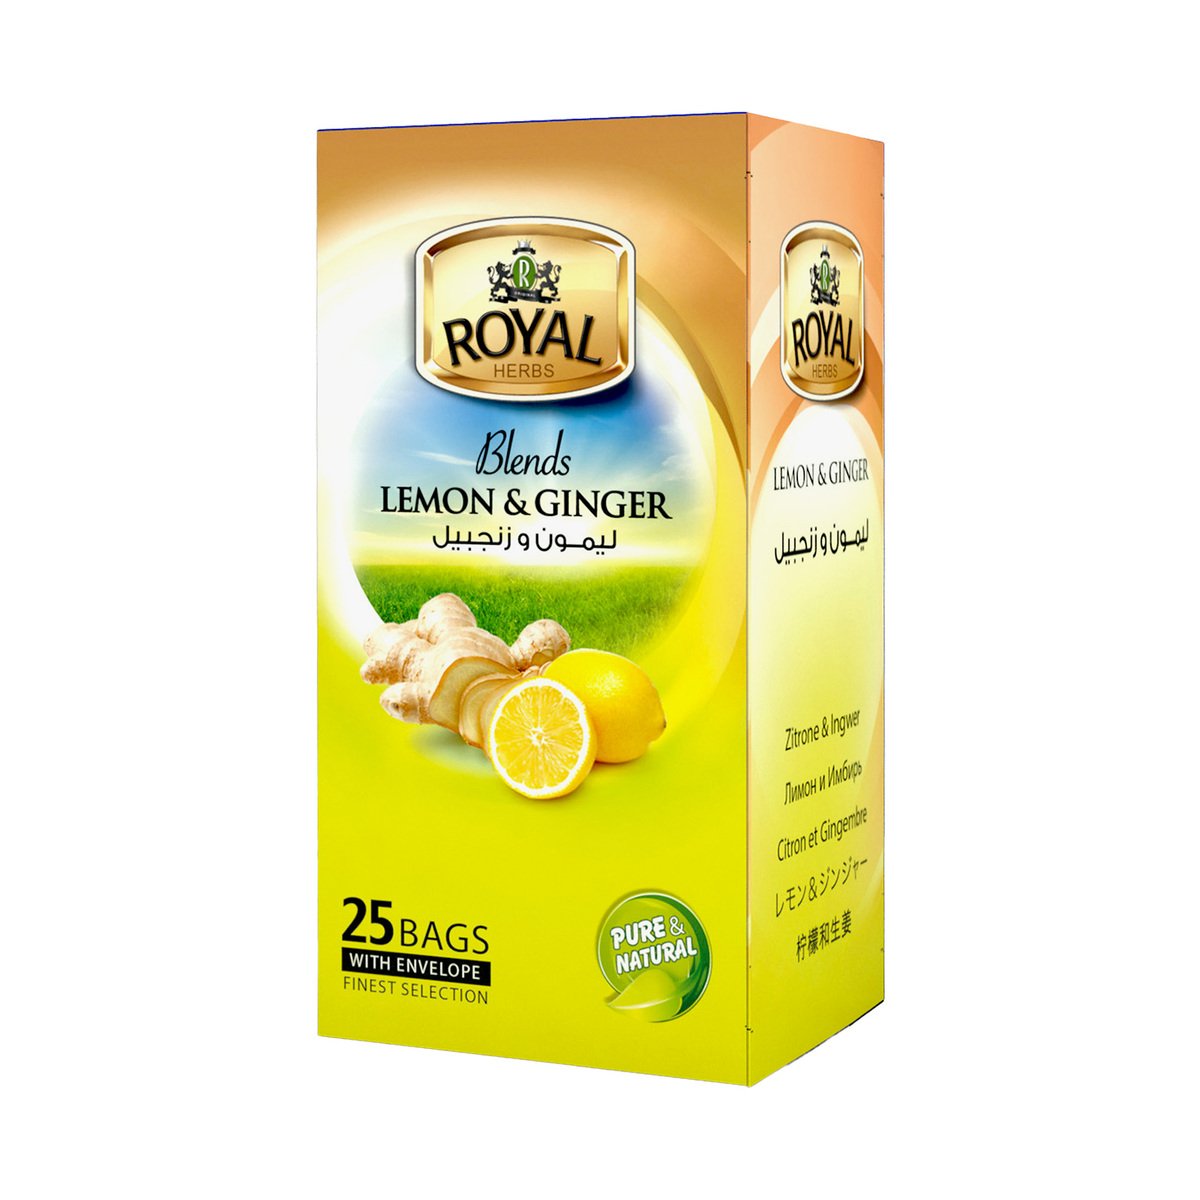 Royal Herbs Blends Lemon & Ginger Tea 25 pcs